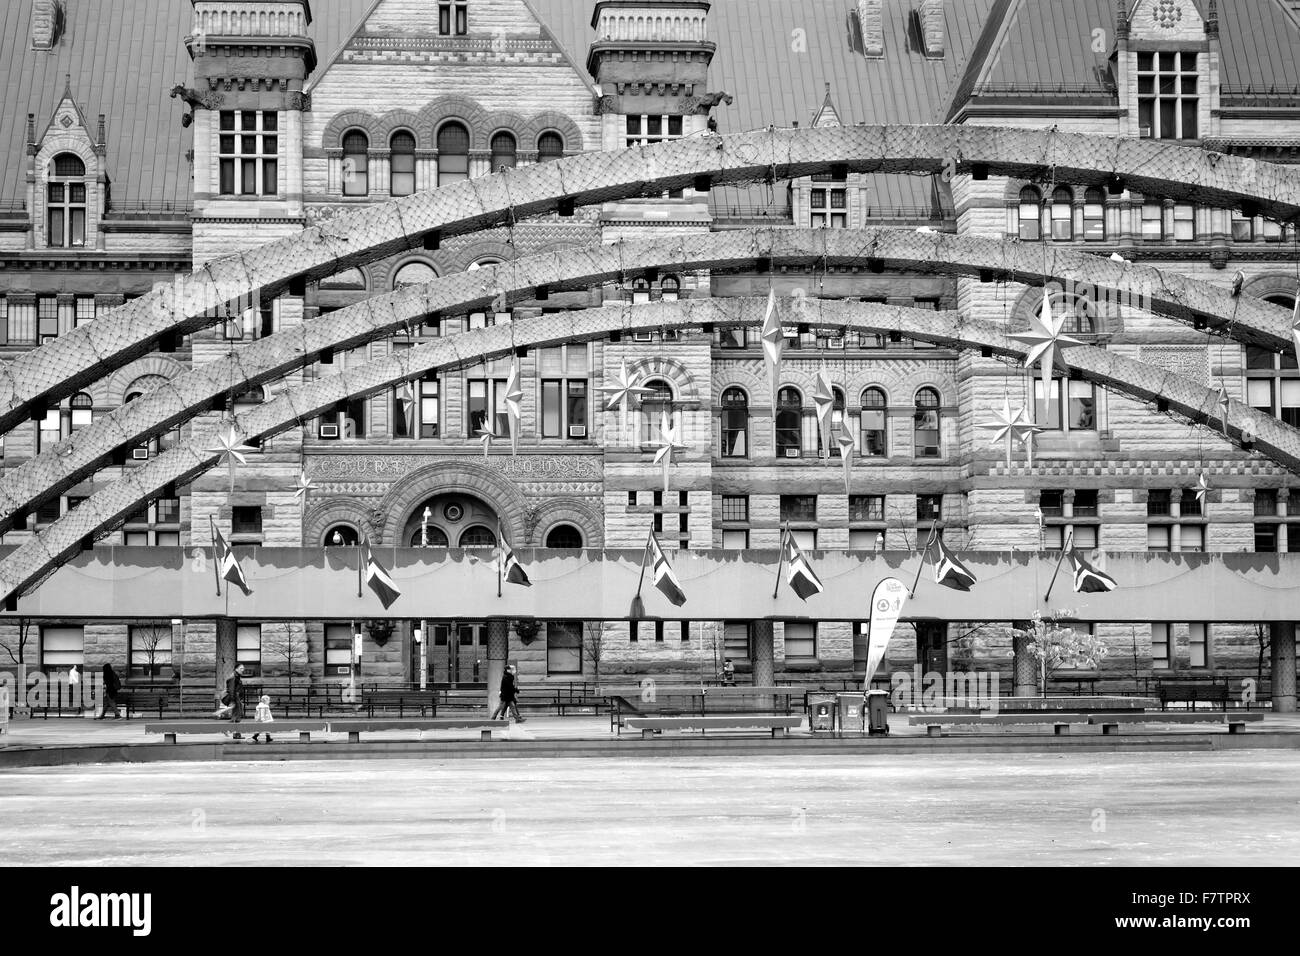 Détails architecturaux de Nathan Phillips Square et l'ancien hôtel de ville de Toronto, Canada Banque D'Images